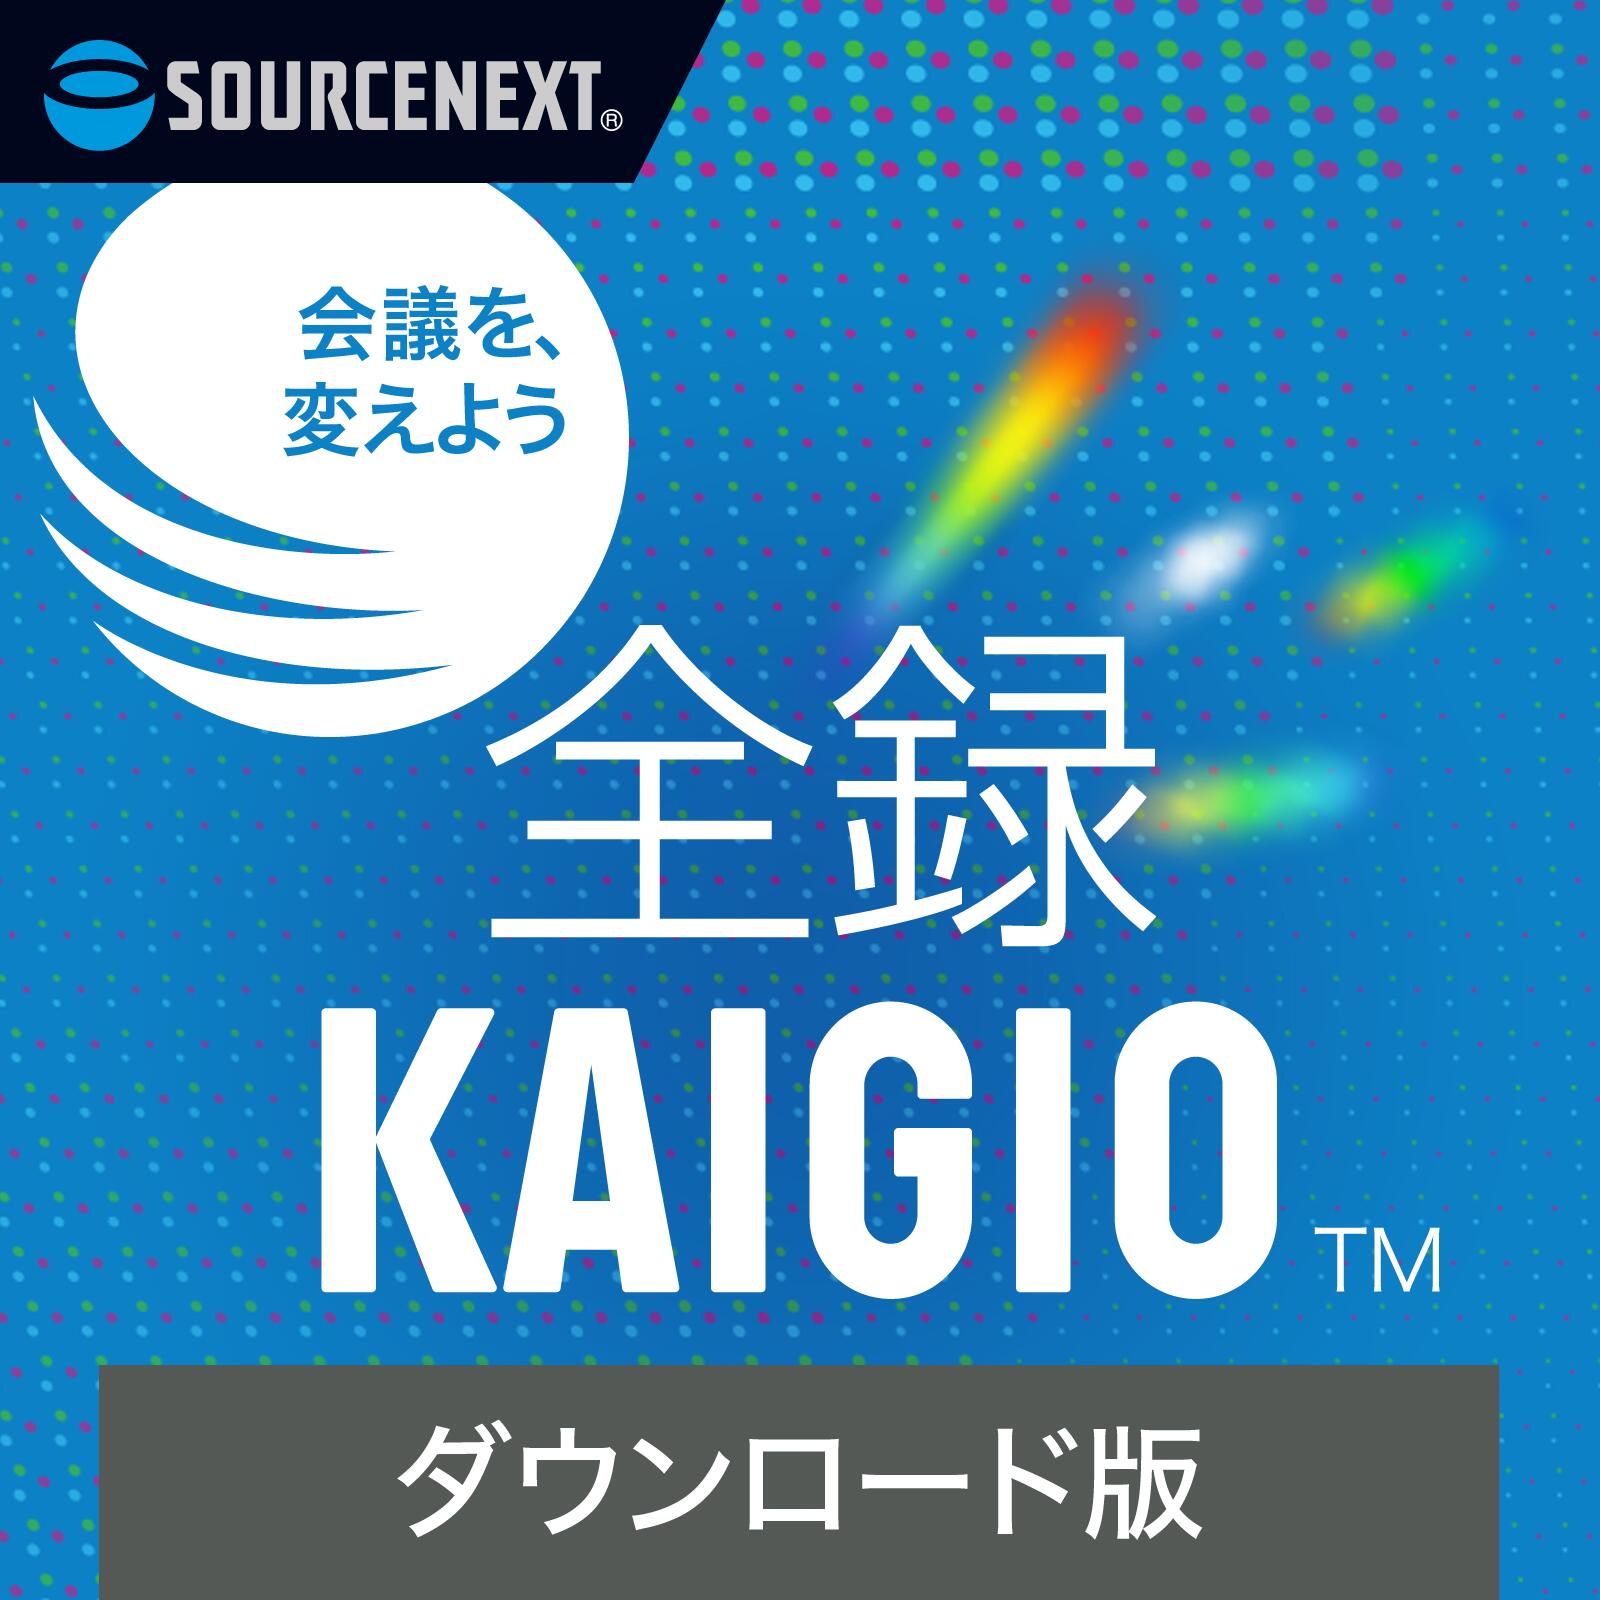 全録KAIGIO【ダウンロード版】DL_SNR Web会議 録画 録音ソフト ソースネクスト